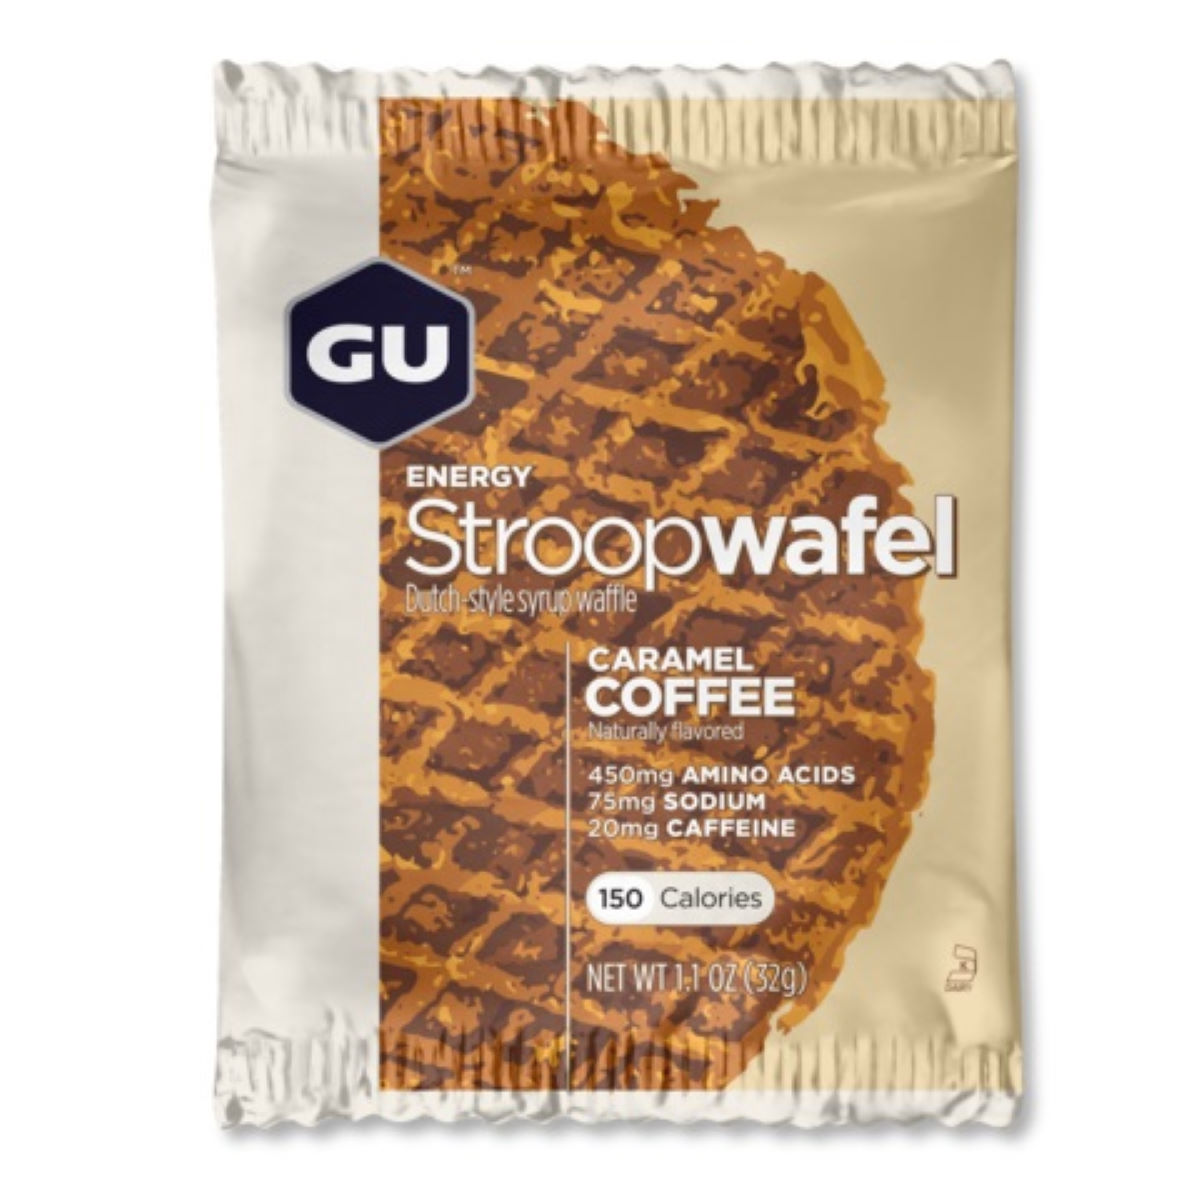 Stroopwafel energético GU (caja de 16 unidades) - Snacks